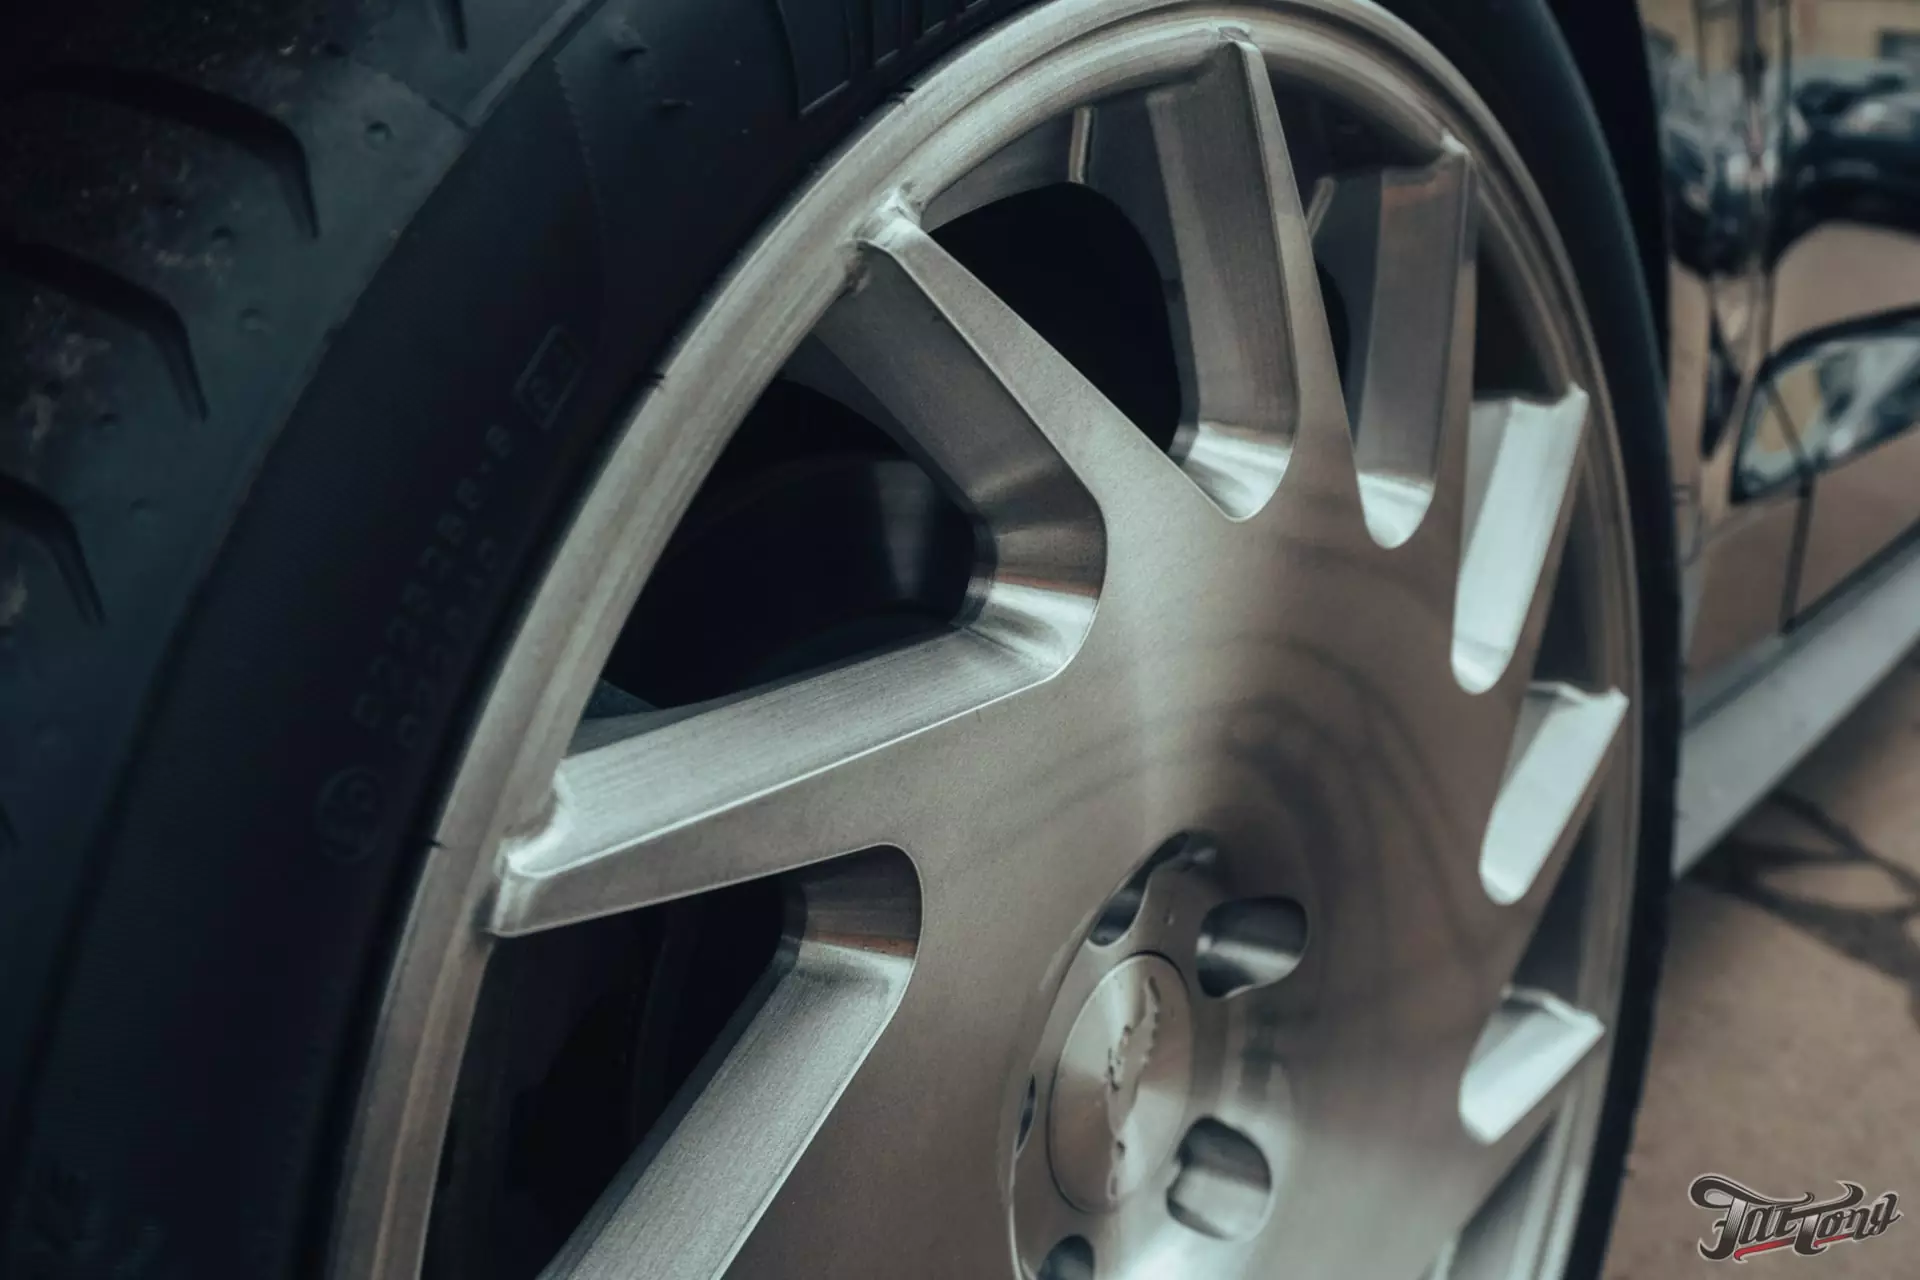 Изготовили комплект кованых дисков с финишной обработкой брашед для Ford Mustang!